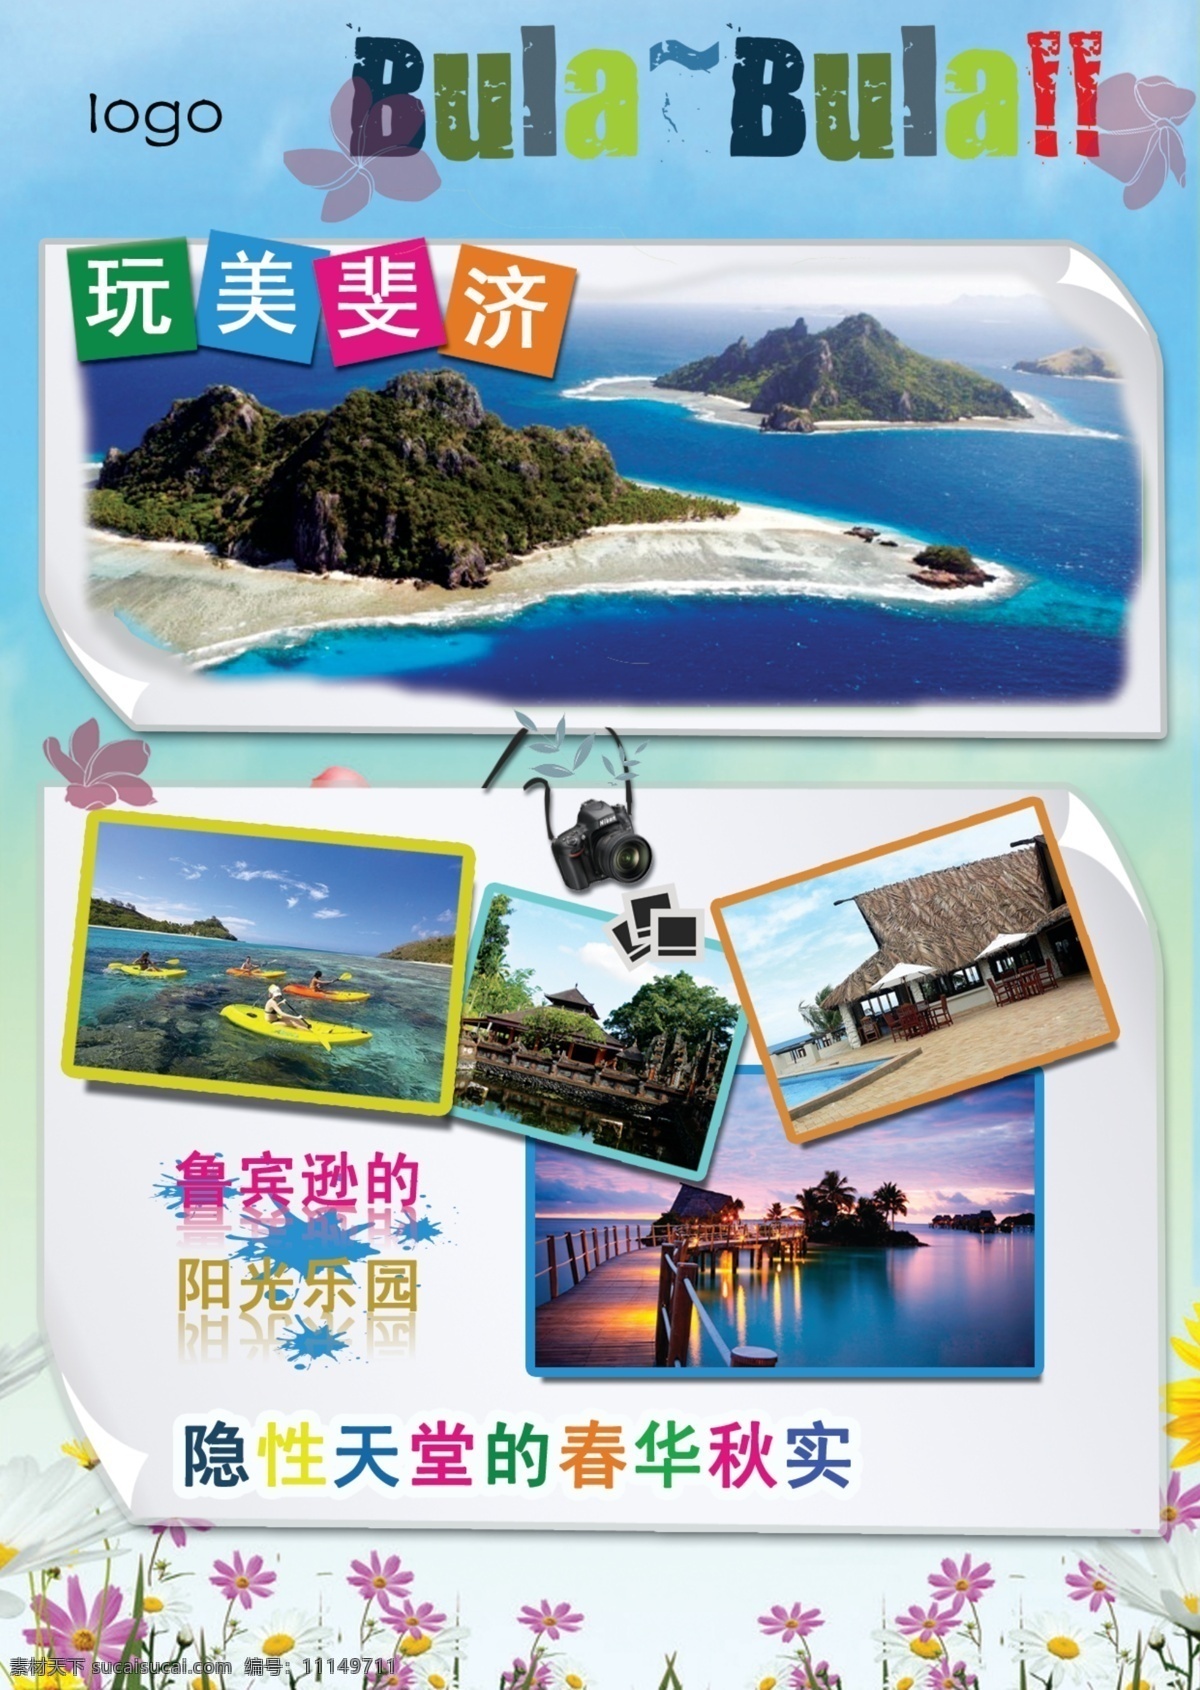 飞斐济封面 斐济 旅游 海报 单页 宣传单 画册设计 广告设计模板 源文件